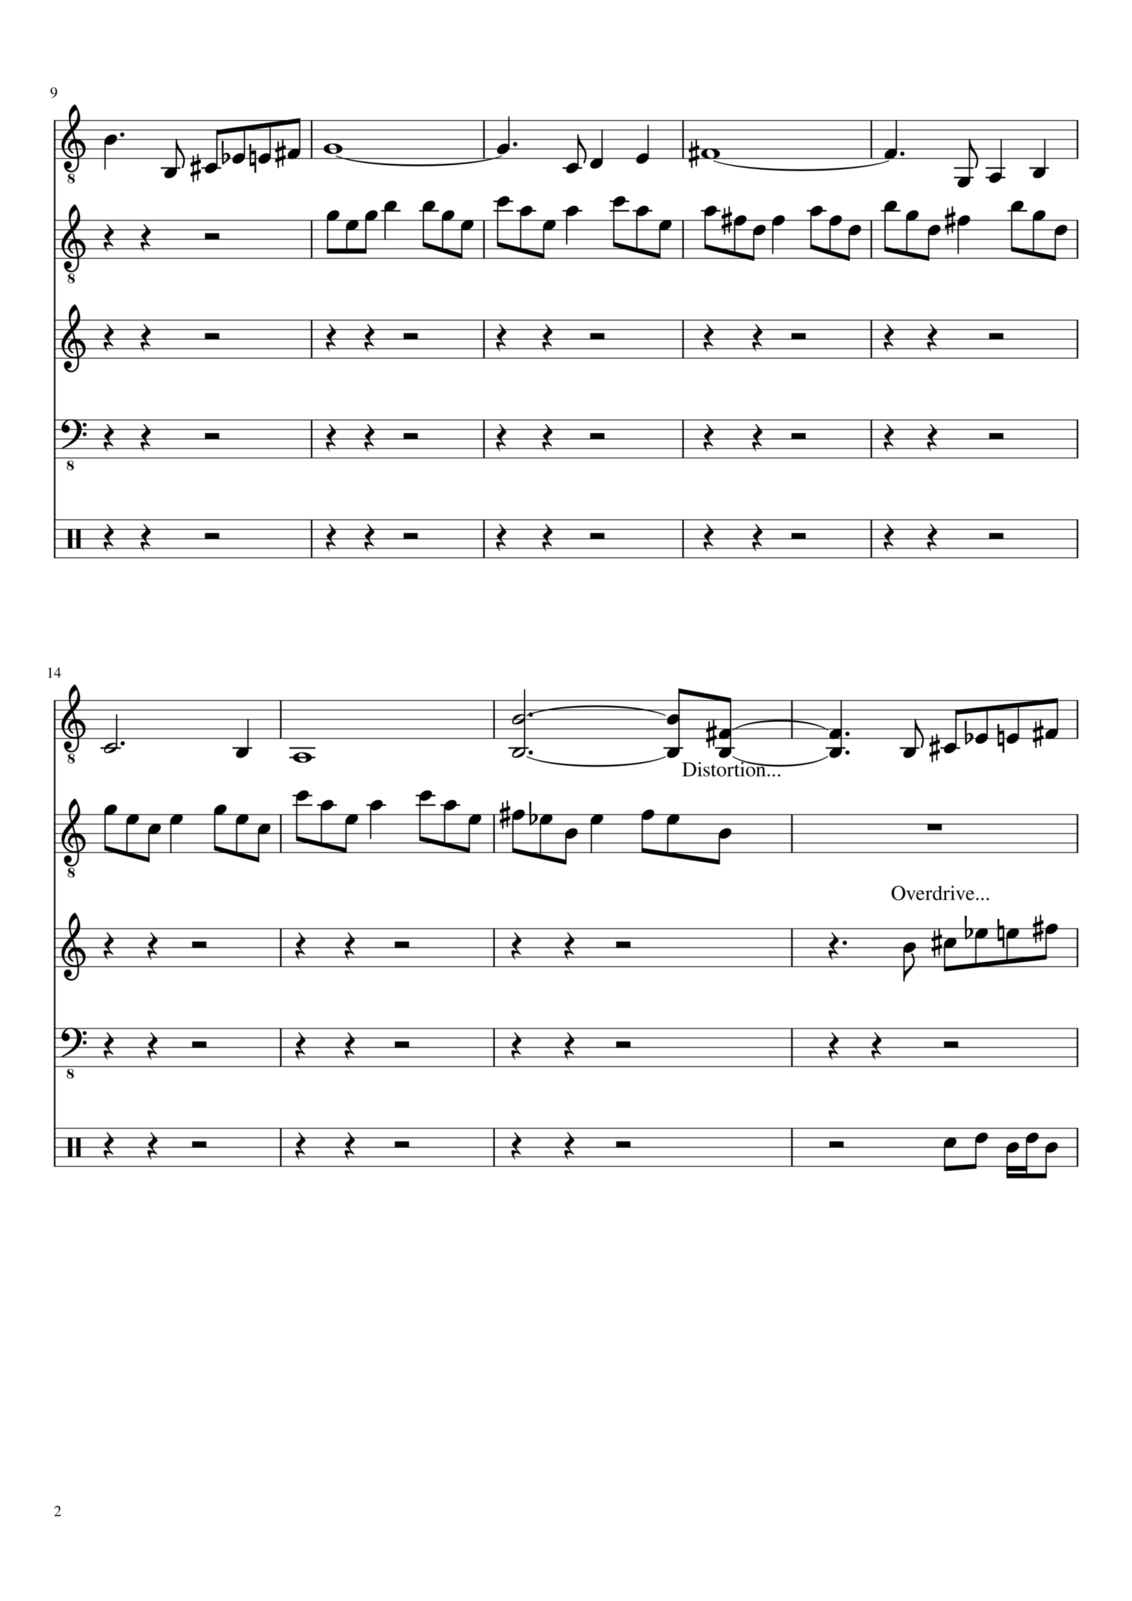 Vospominaniya o byiloy lyubvi slide, Image 2